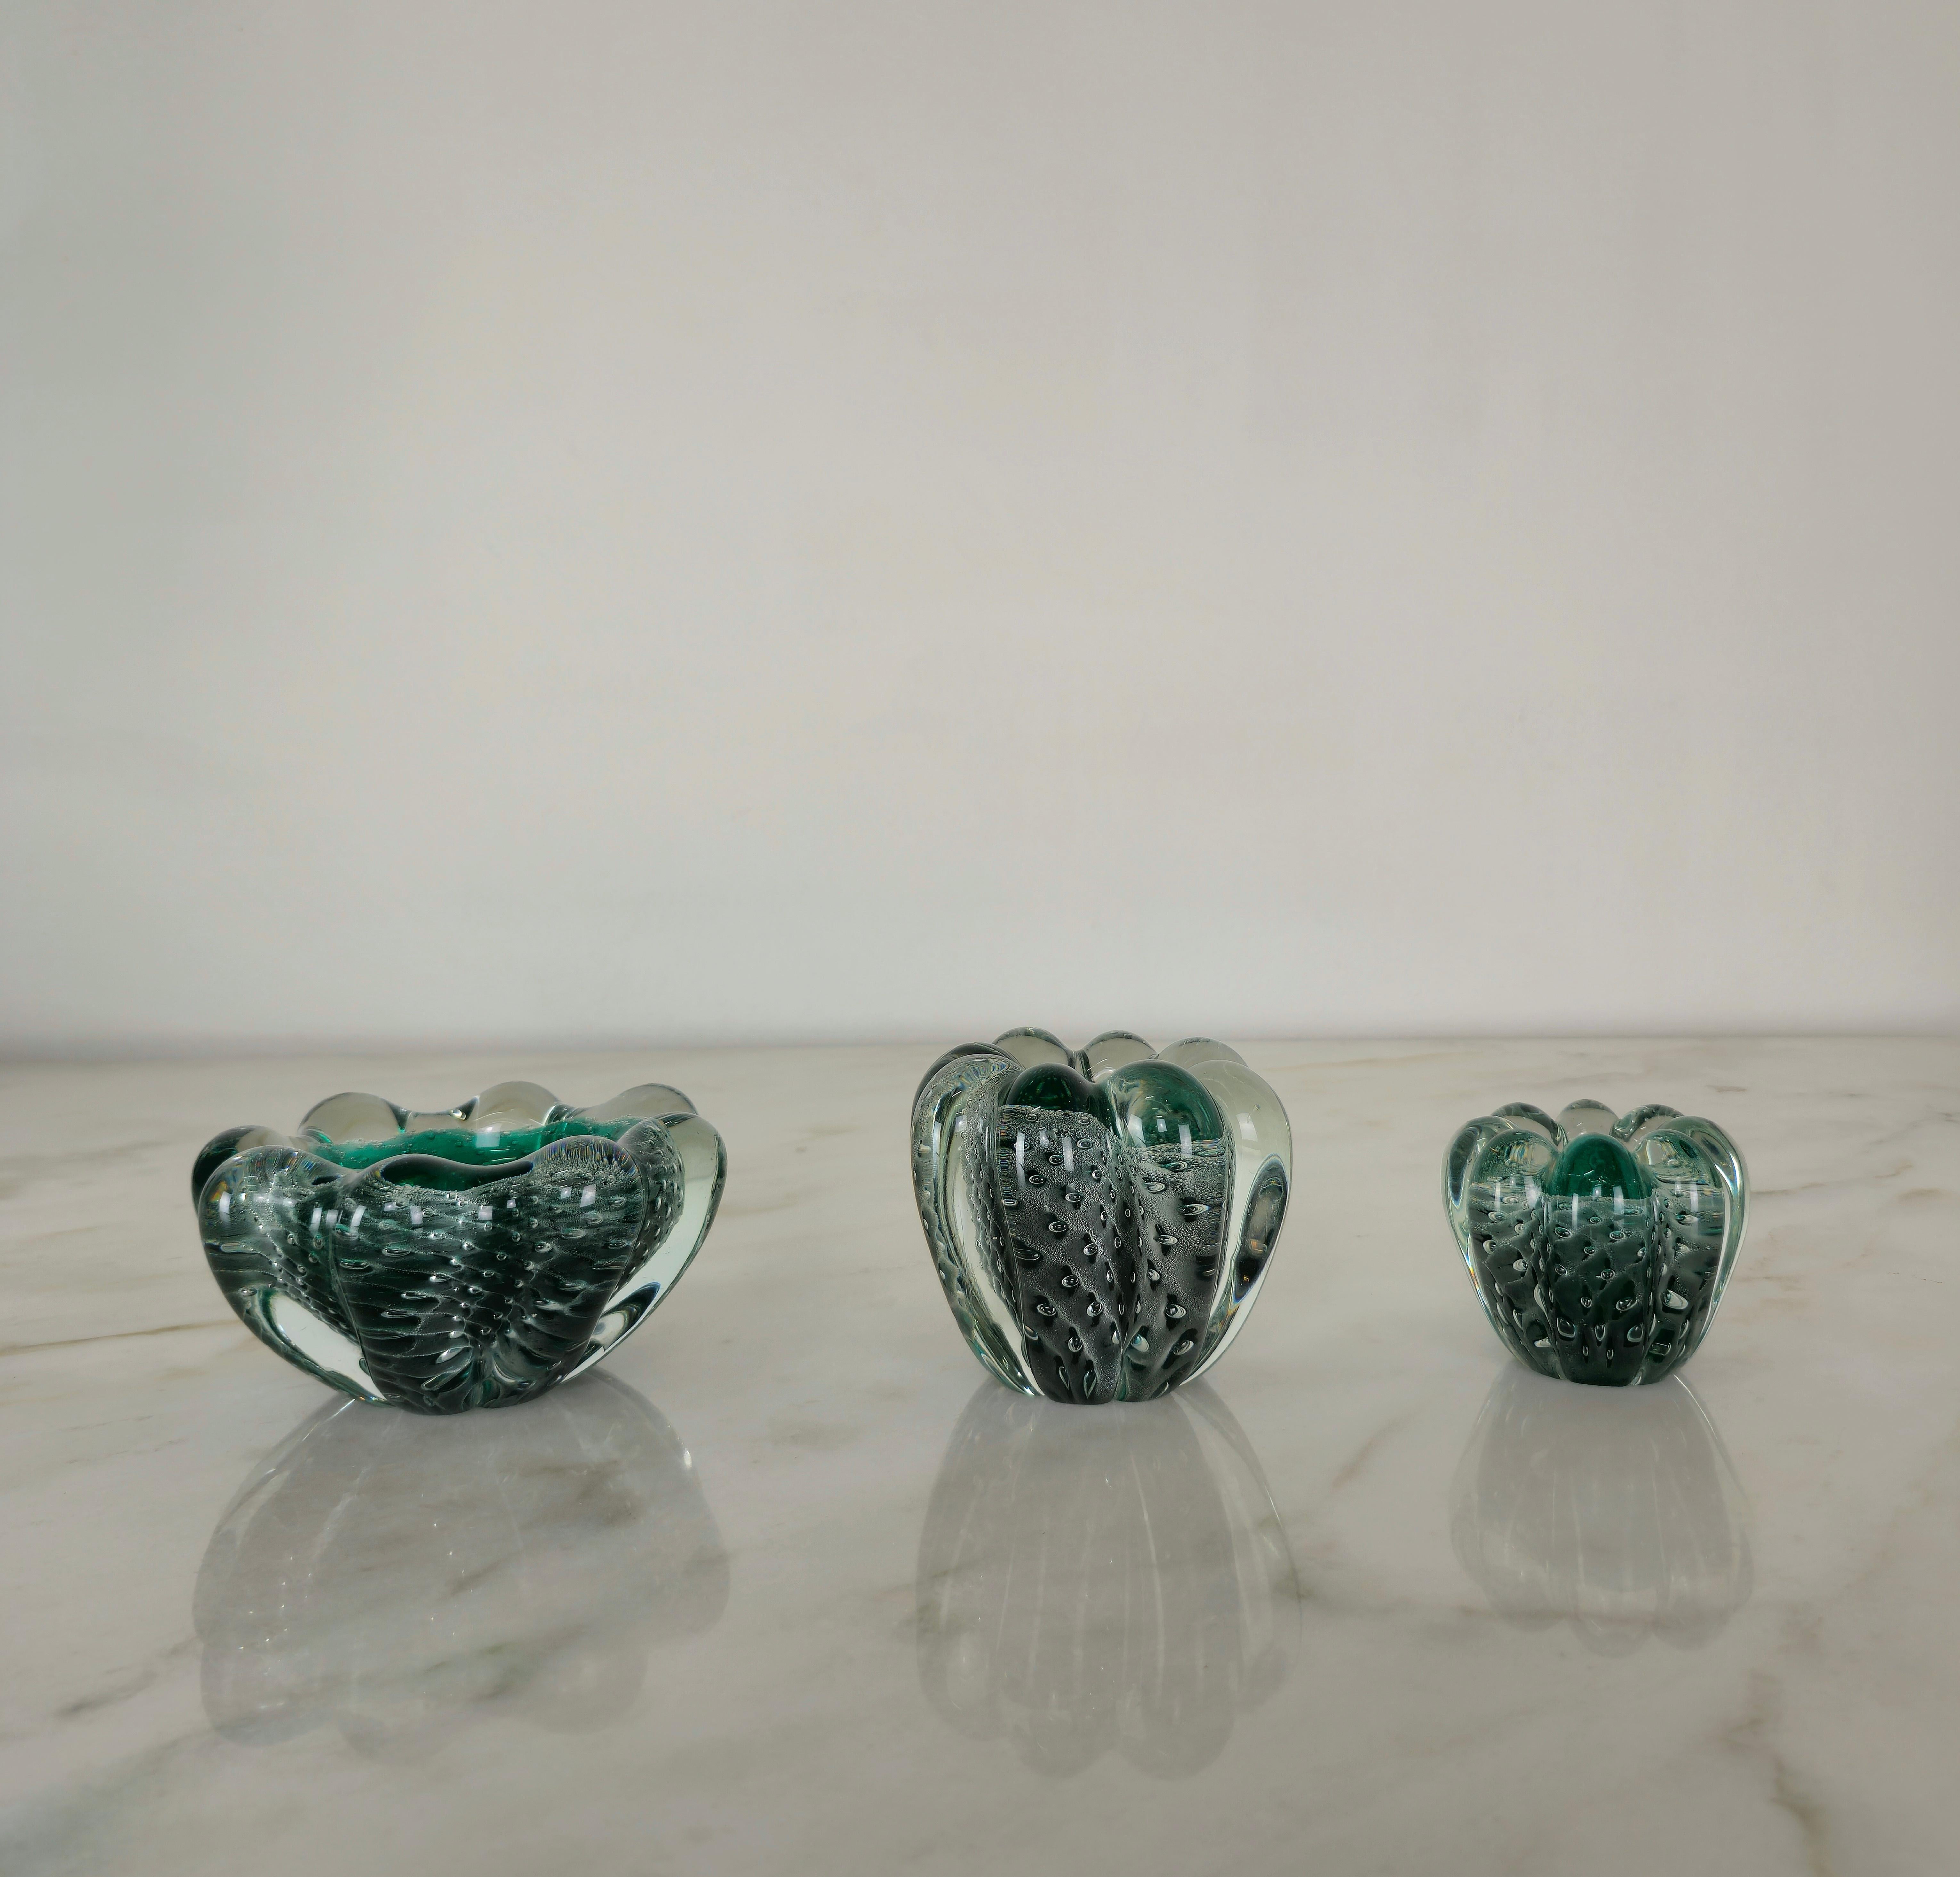 Satz von 3 Videopochen/Aschenbechern/Dekorationsobjekten unterschiedlicher Größe, hergestellt in Italien in den 1950er Jahren von Seguso Vetri d'Arte.
Die 3 Objekte wurden aus sommerso bullicante Murano-Glas in transparenten und smaragdgrünen